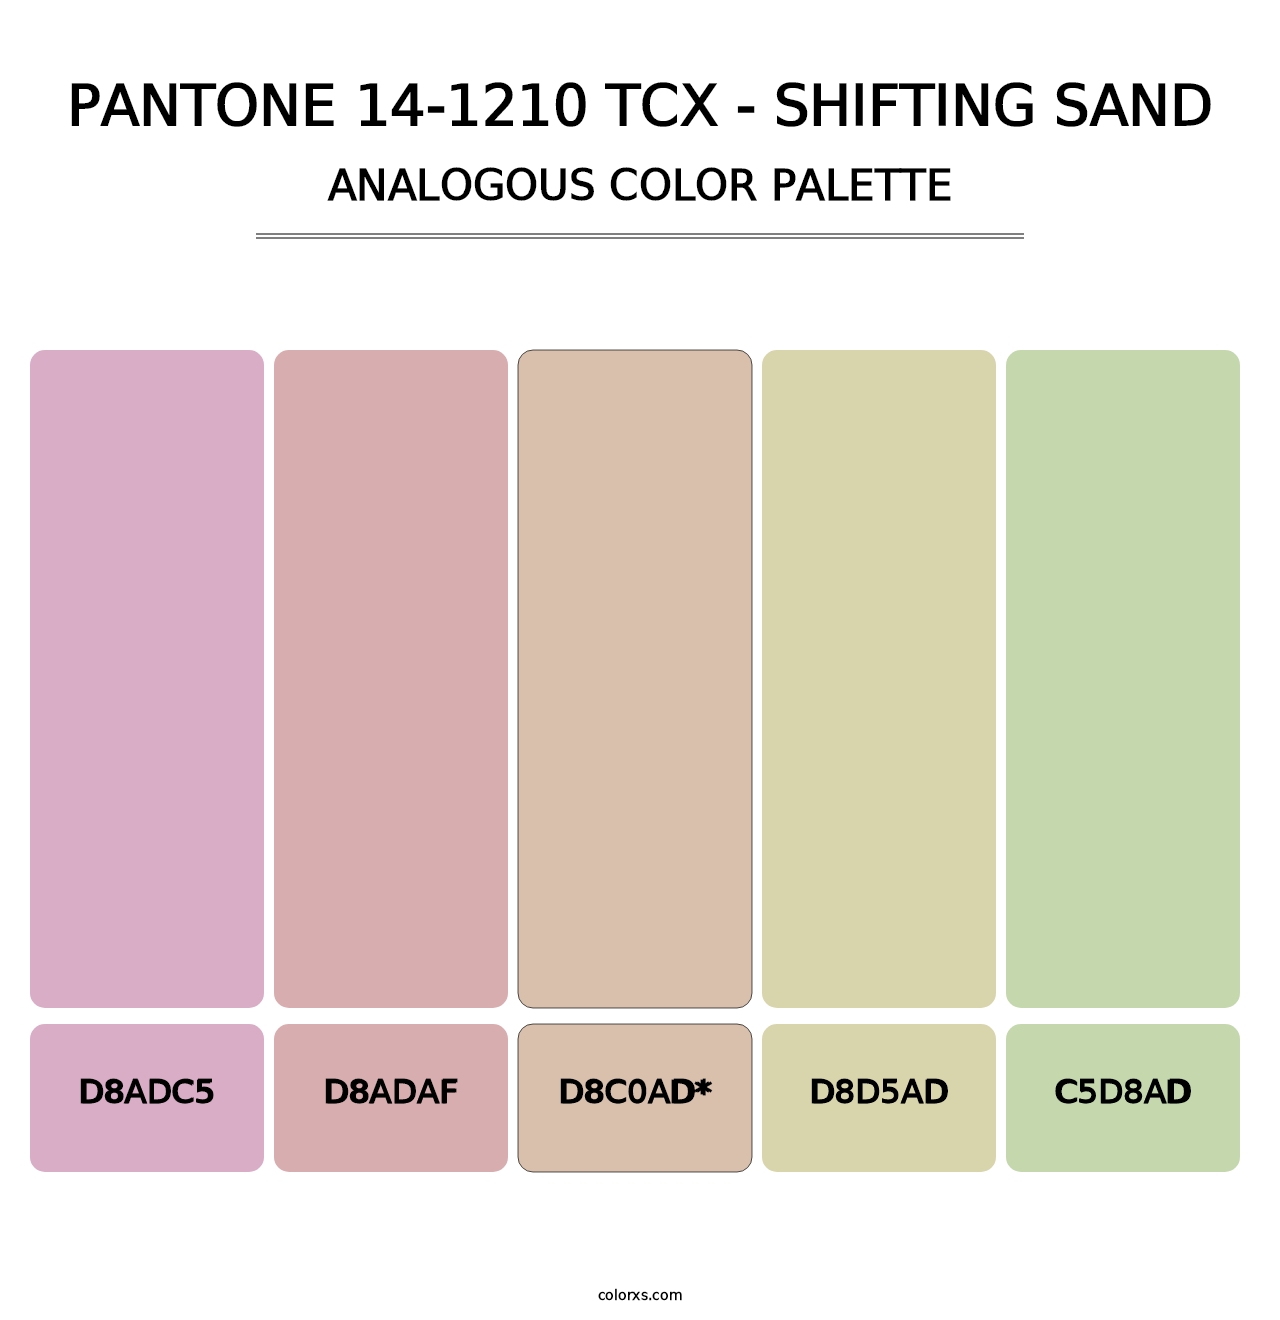 PANTONE 14-1210 TCX - Shifting Sand - Analogous Color Palette